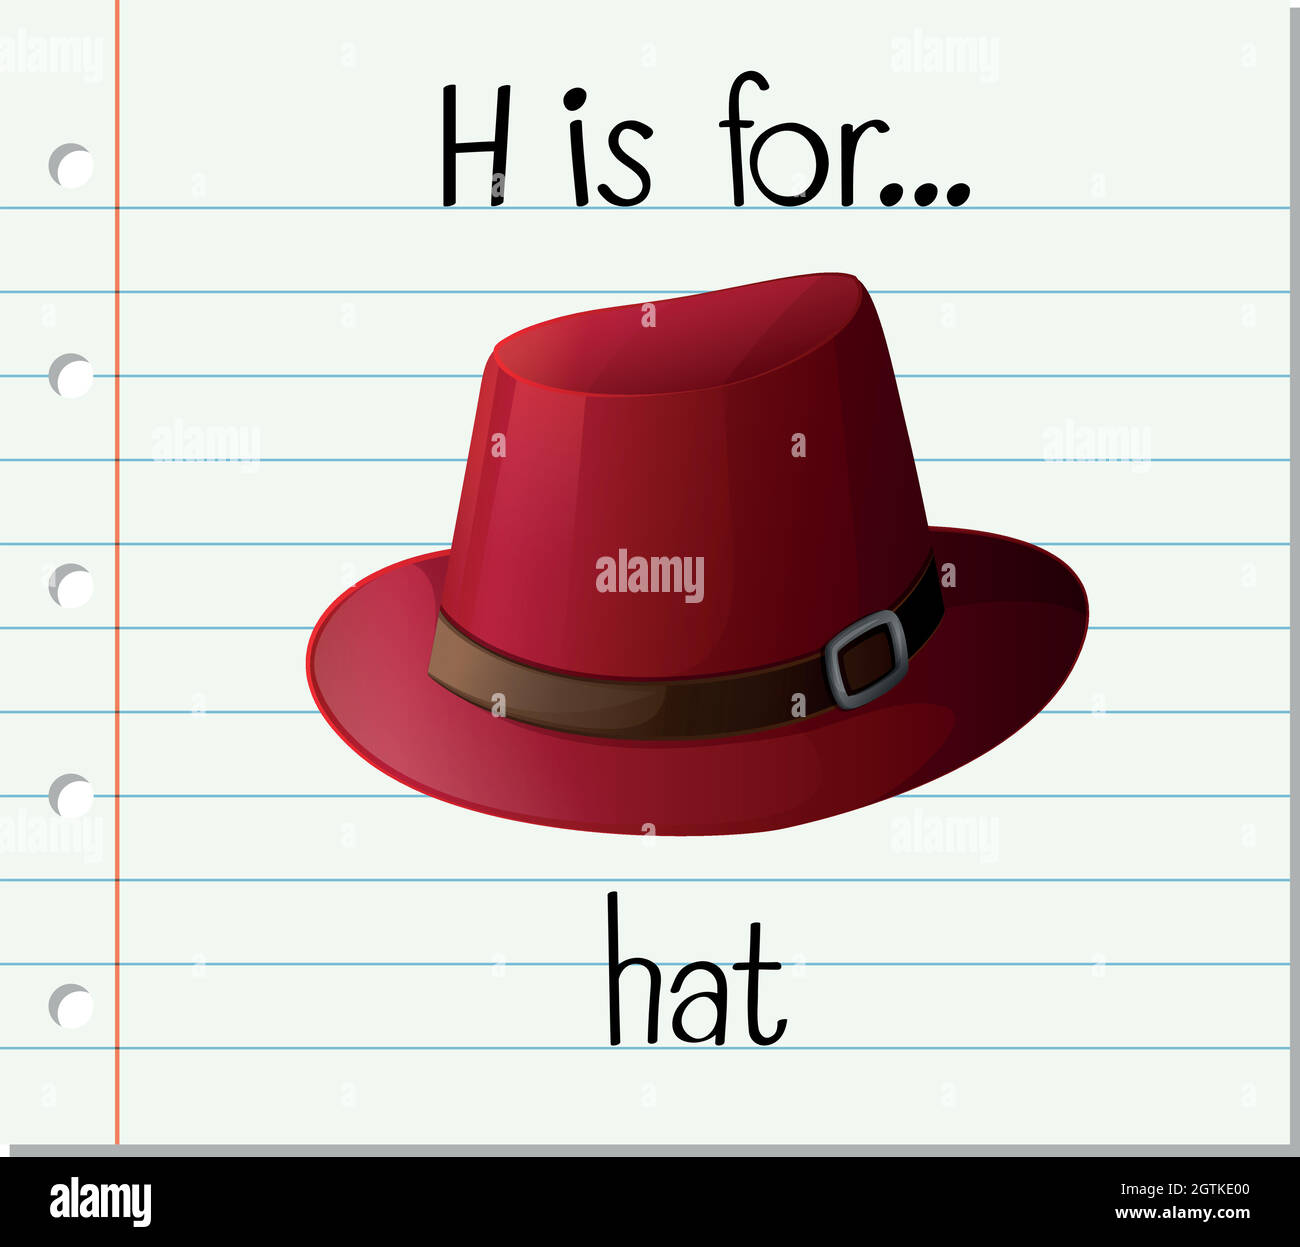 Транскрипция английского hat. Шляпа английски. Карточка шляпа на английском. Что такое по английскому hat. Шляпа на английском языке для детей.